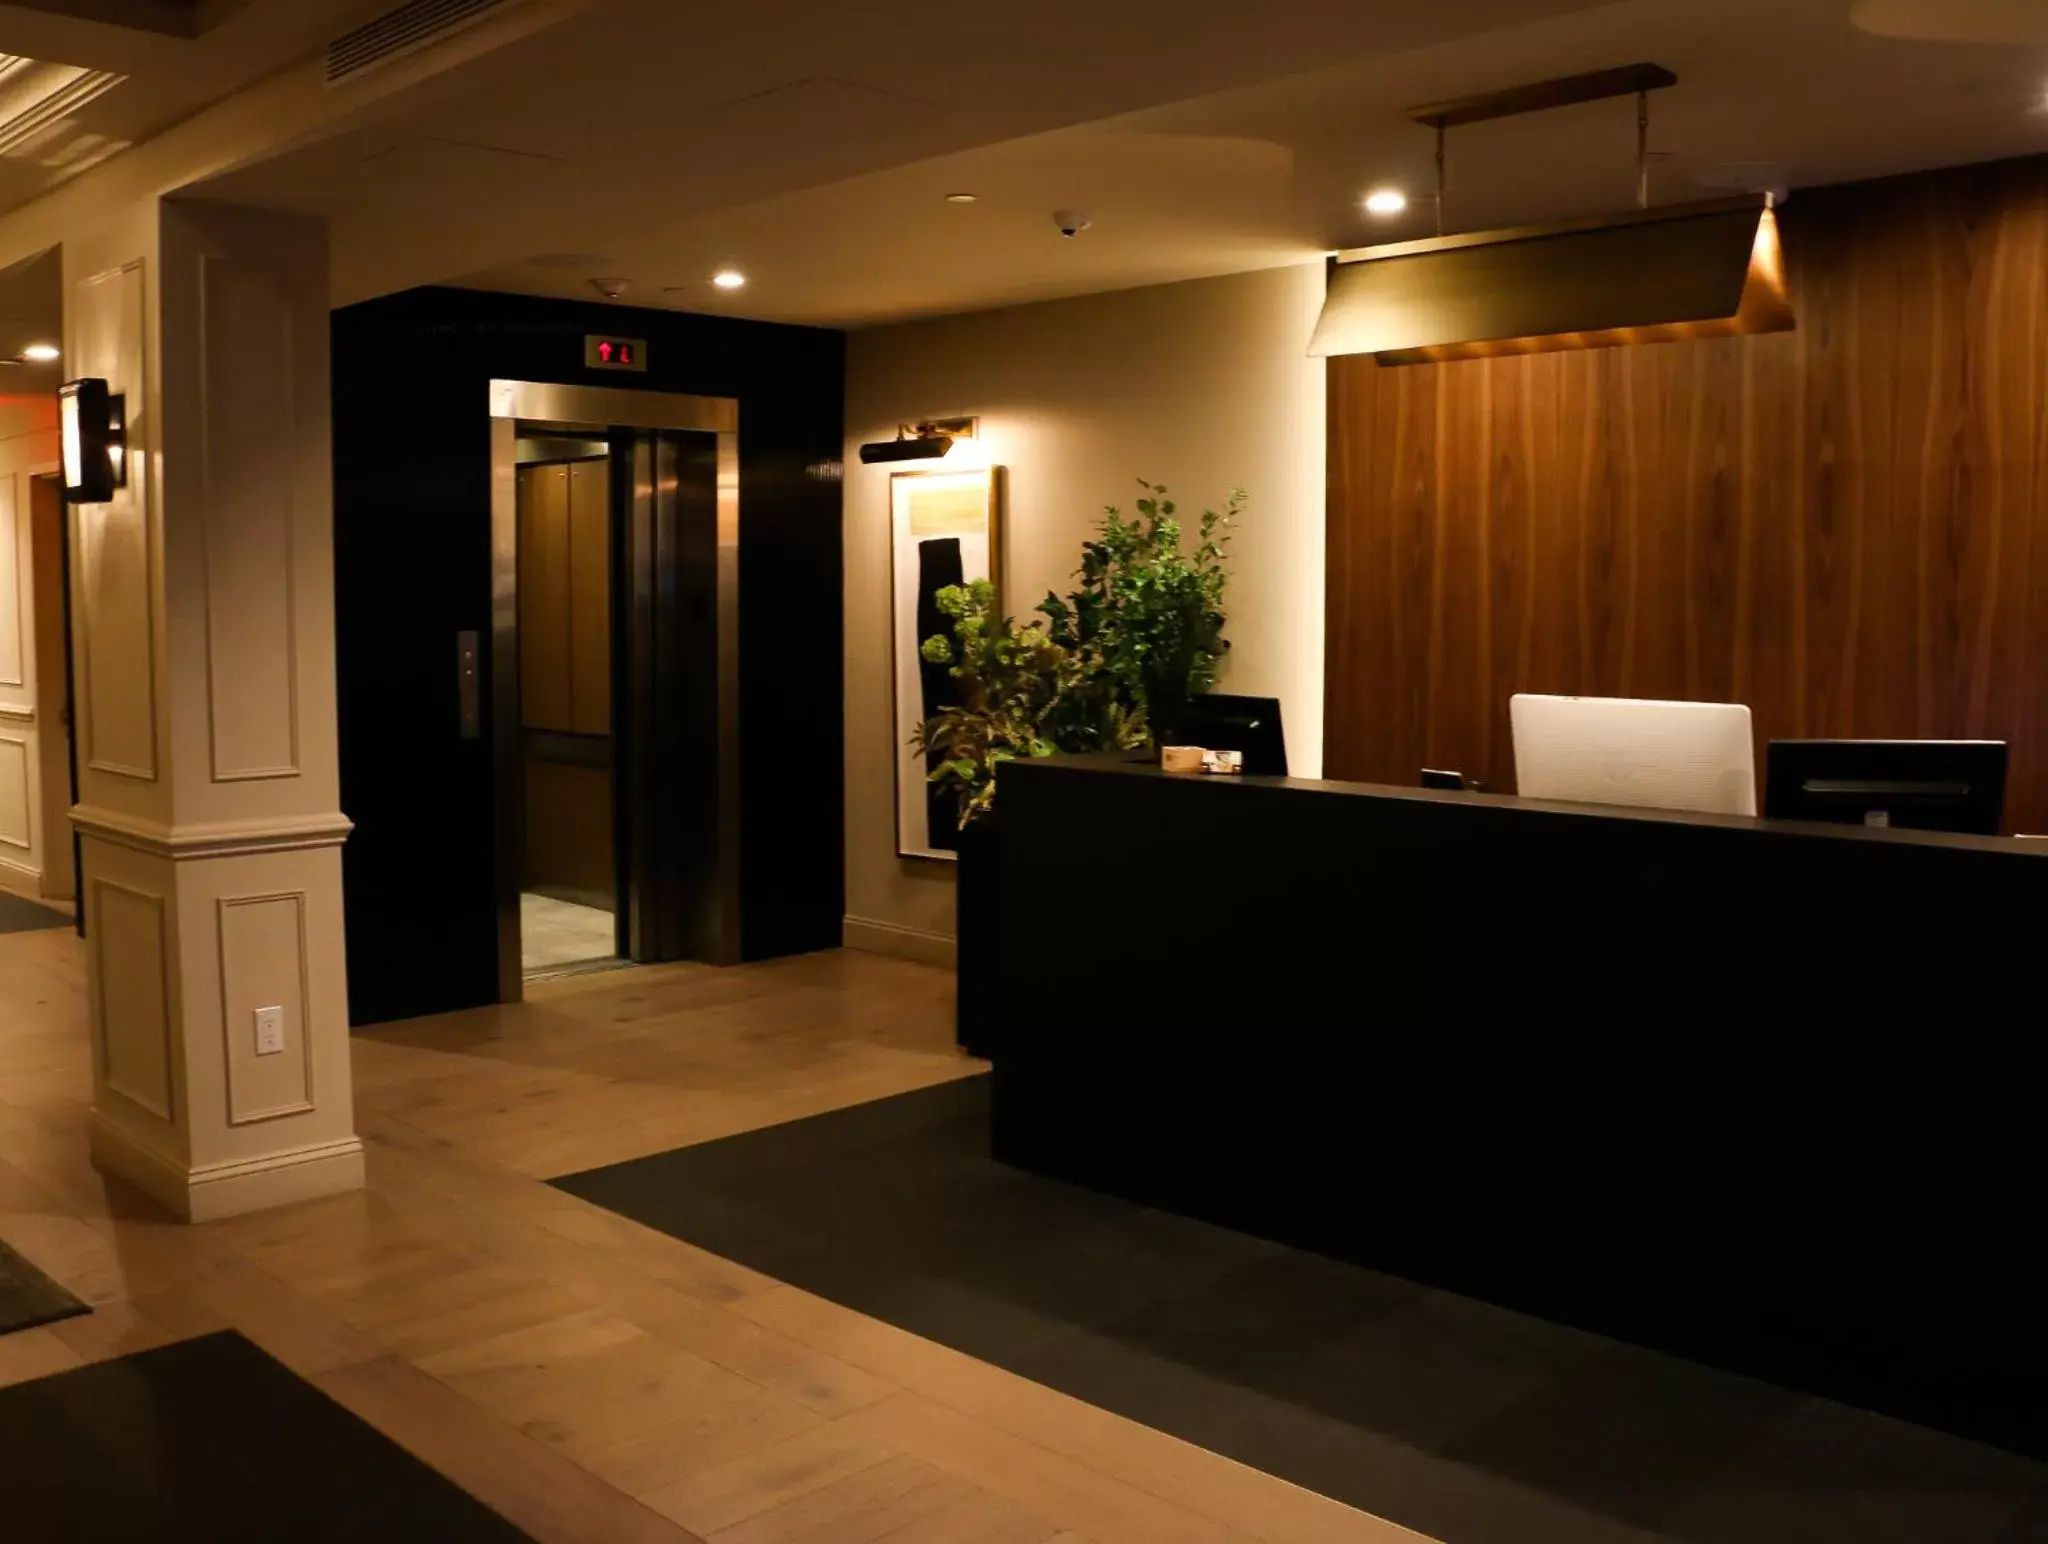 Lobby or reception, Lobby/Reception in Hotel 32 32